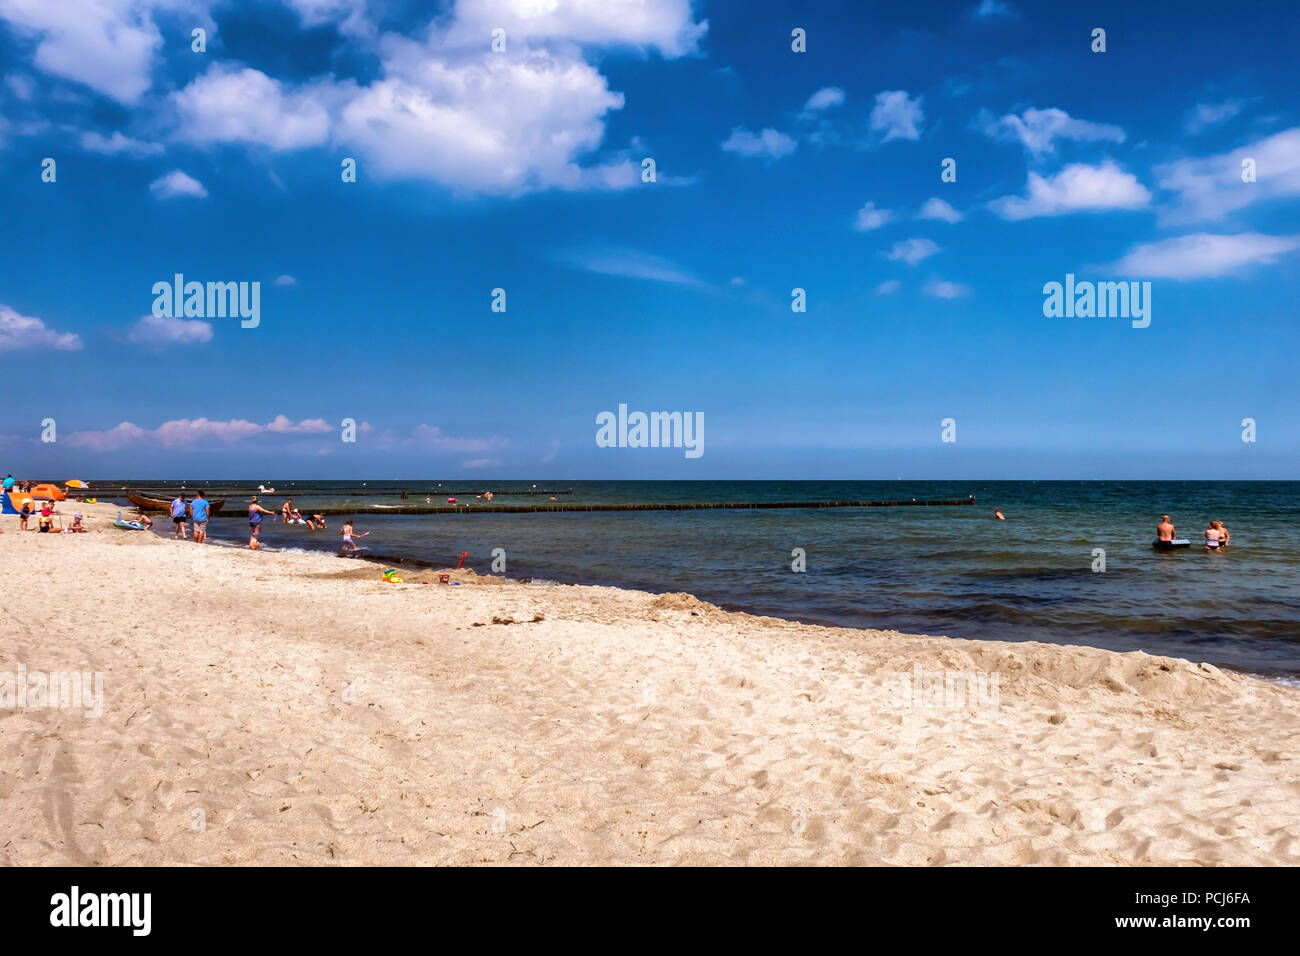 Germania Loddin,Stubbenfelde Beach. Di balneazione costiere resort sull'isola di Usedom sul Mar Baltico. Spiaggia di sabbia, persone nuotare nel mare tranquillo. Foto Stock